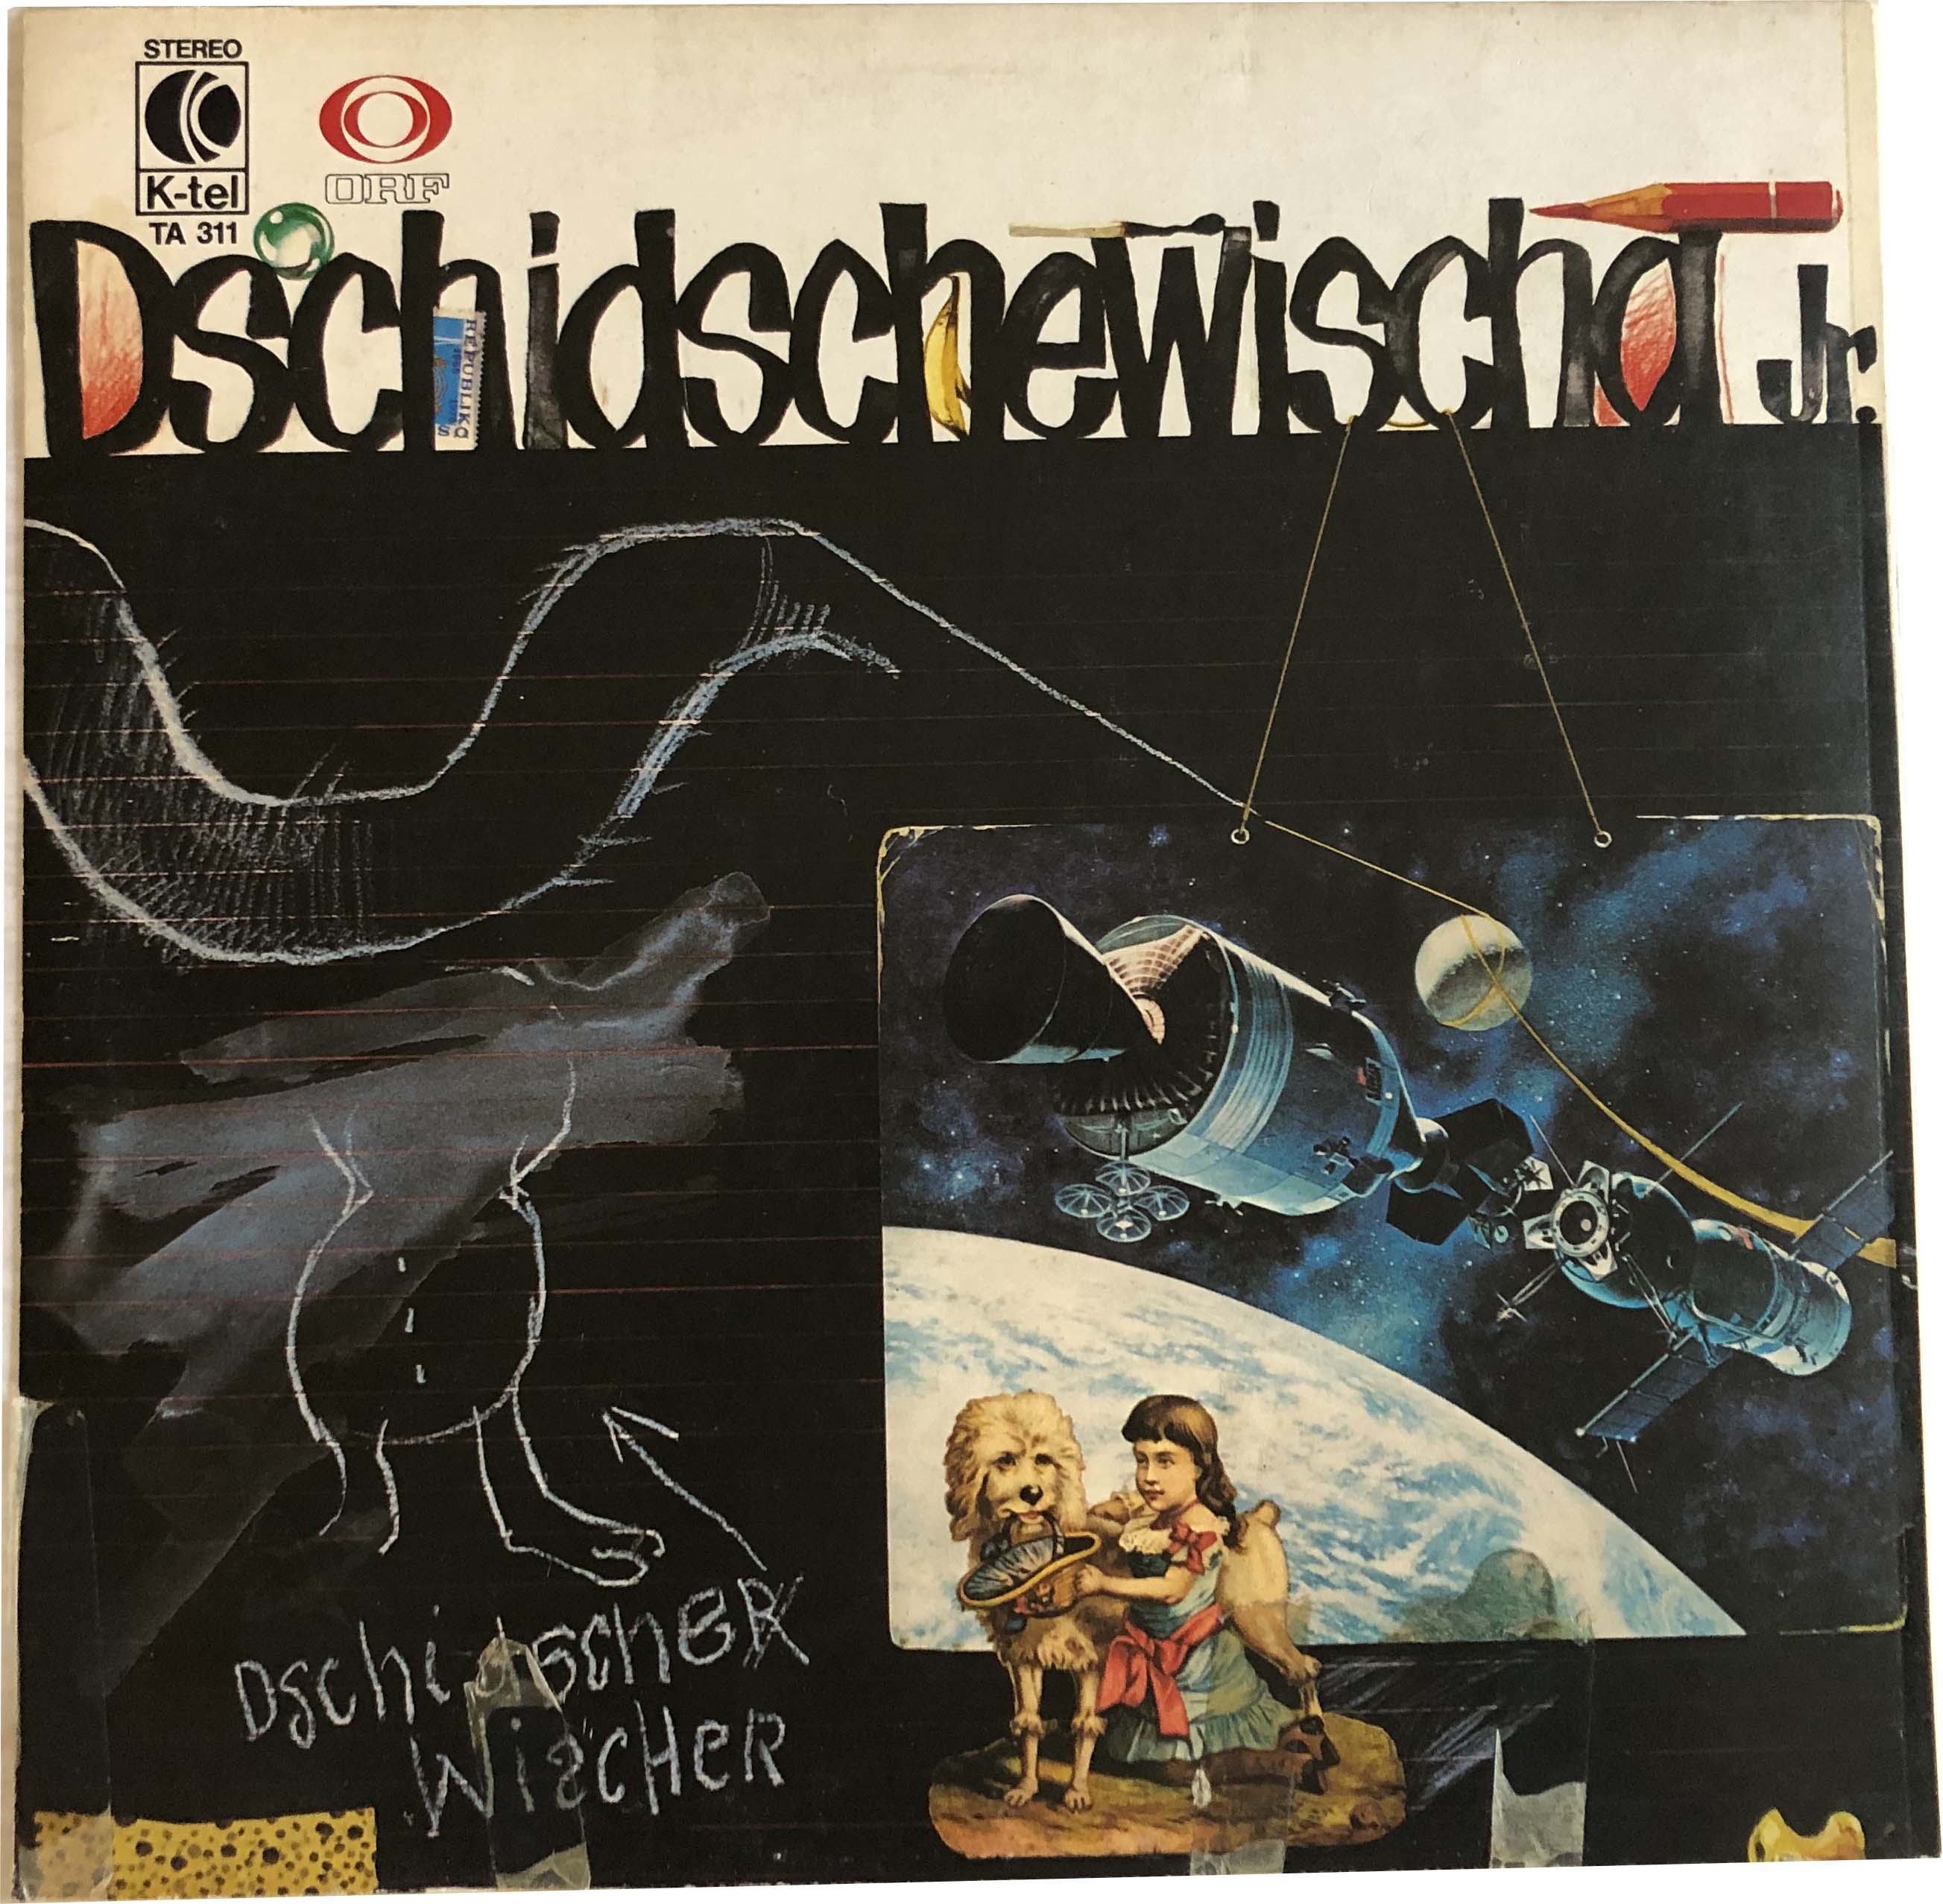 Dschi-Dsche-i_LP2_1979